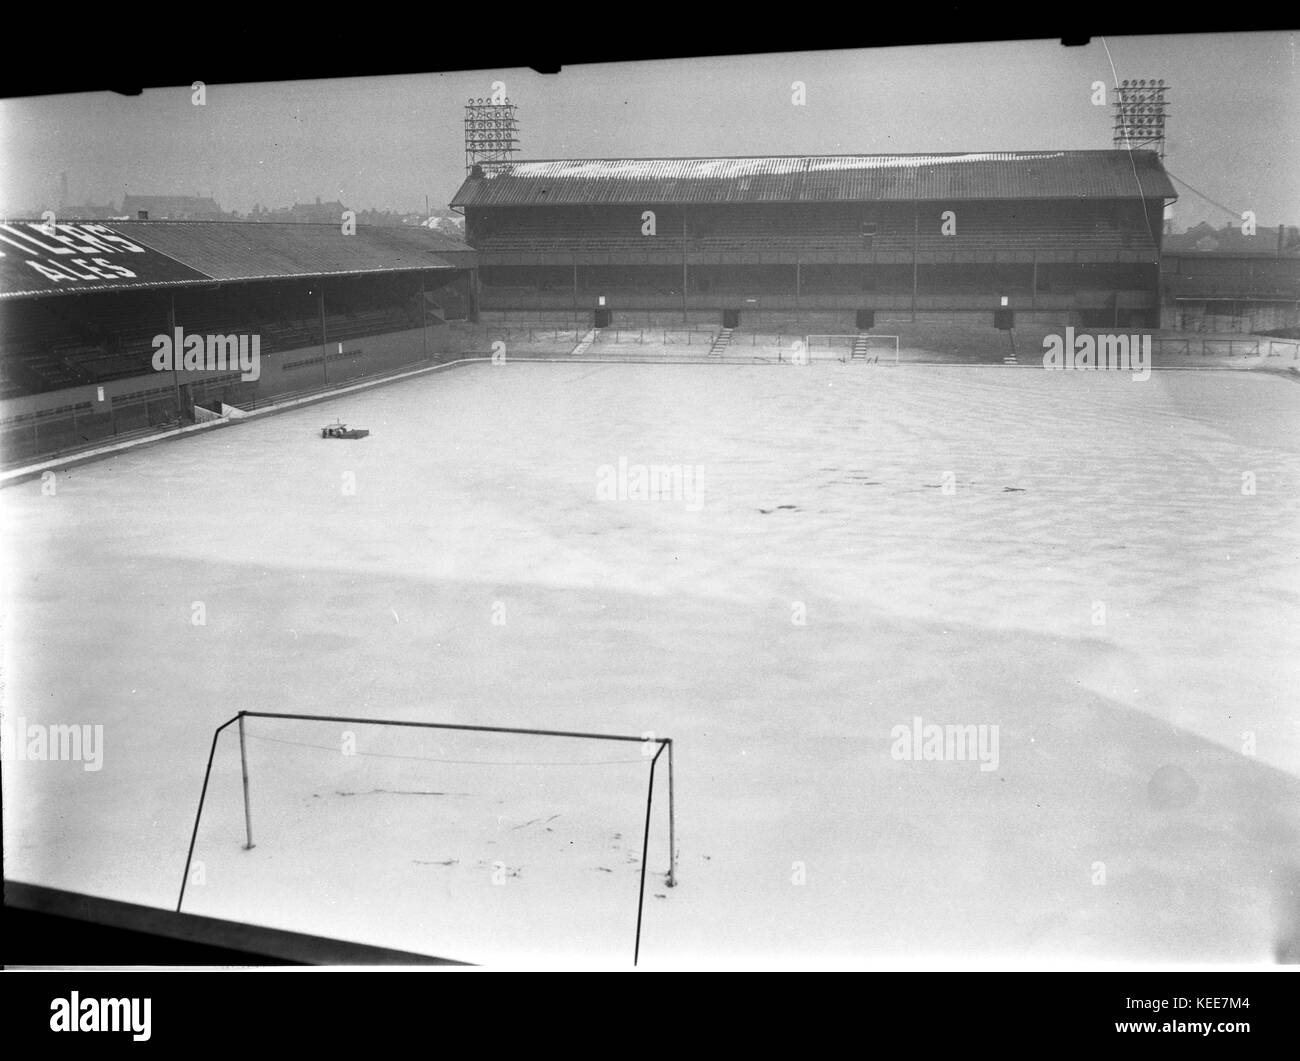 Derby County Football Club stadium dal 1895 al 1997 - La terra di Baseball - sotto snowon 22 gennaio 1963. Fotografia di Tony Henshaw.Caption locale *** Dal interamente posseduta negativi originali. Foto Stock